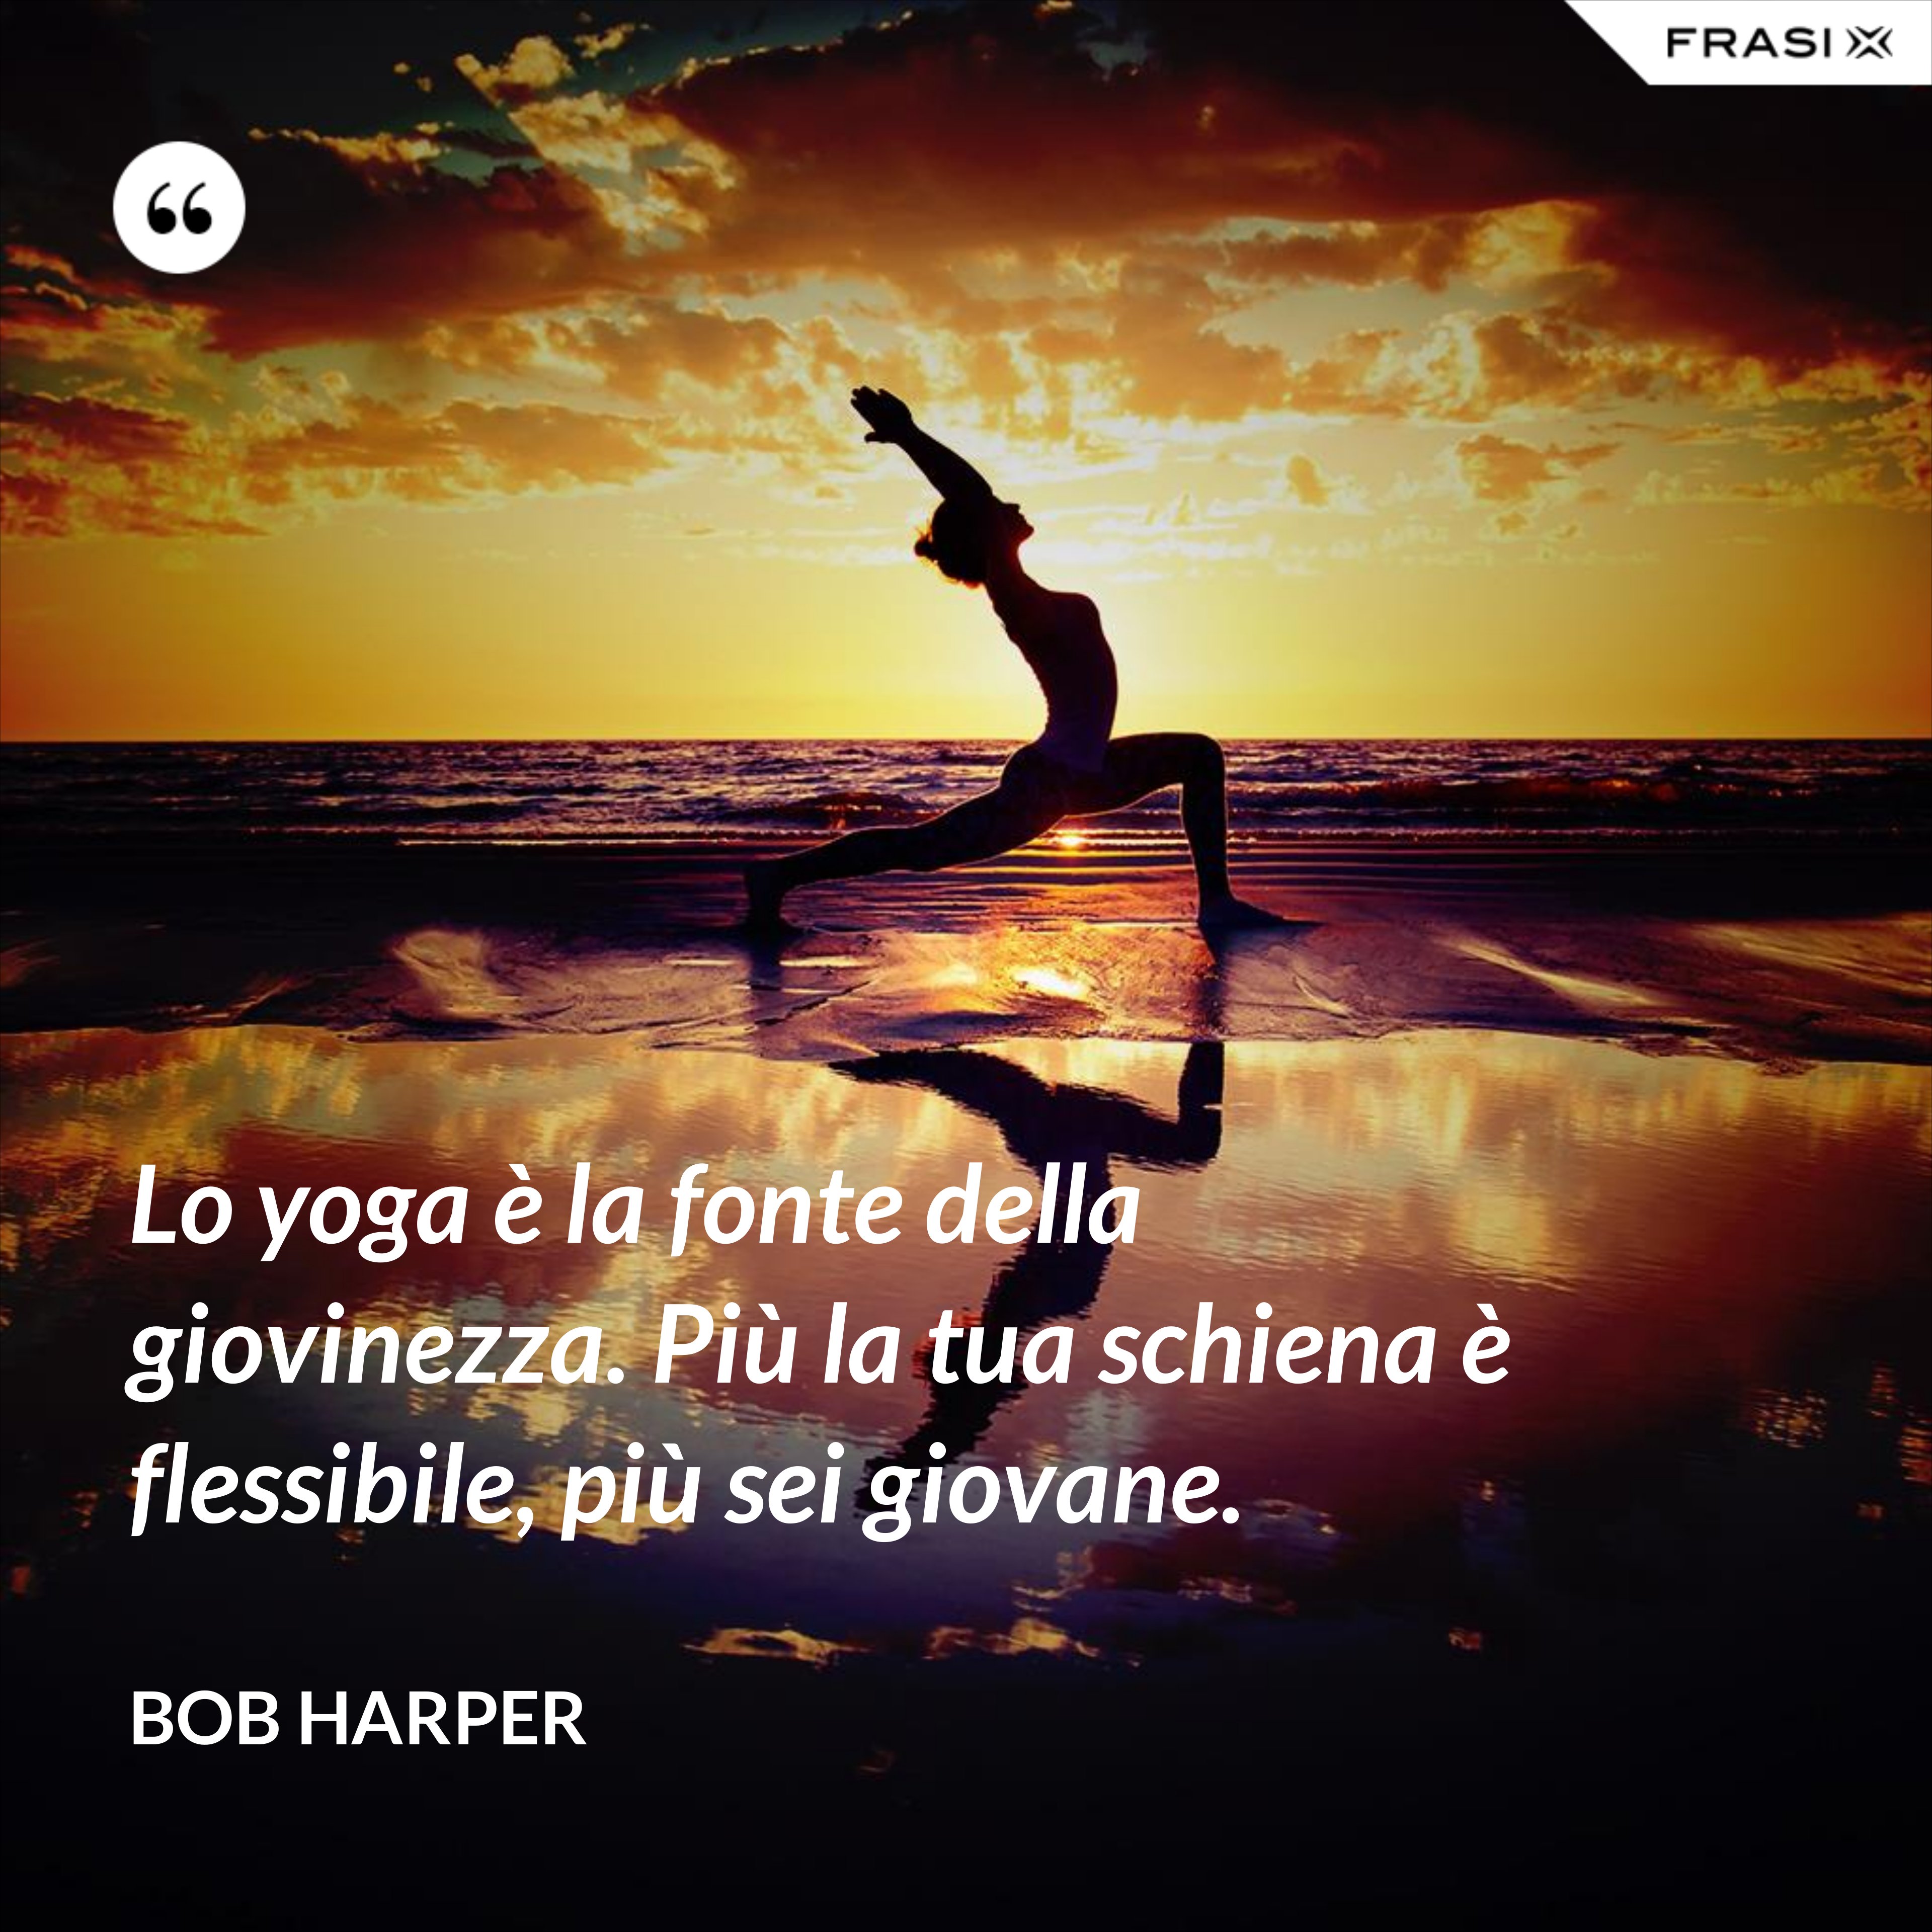 Lo yoga è la fonte della giovinezza. Più la tua schiena è flessibile, più sei giovane. - Bob Harper